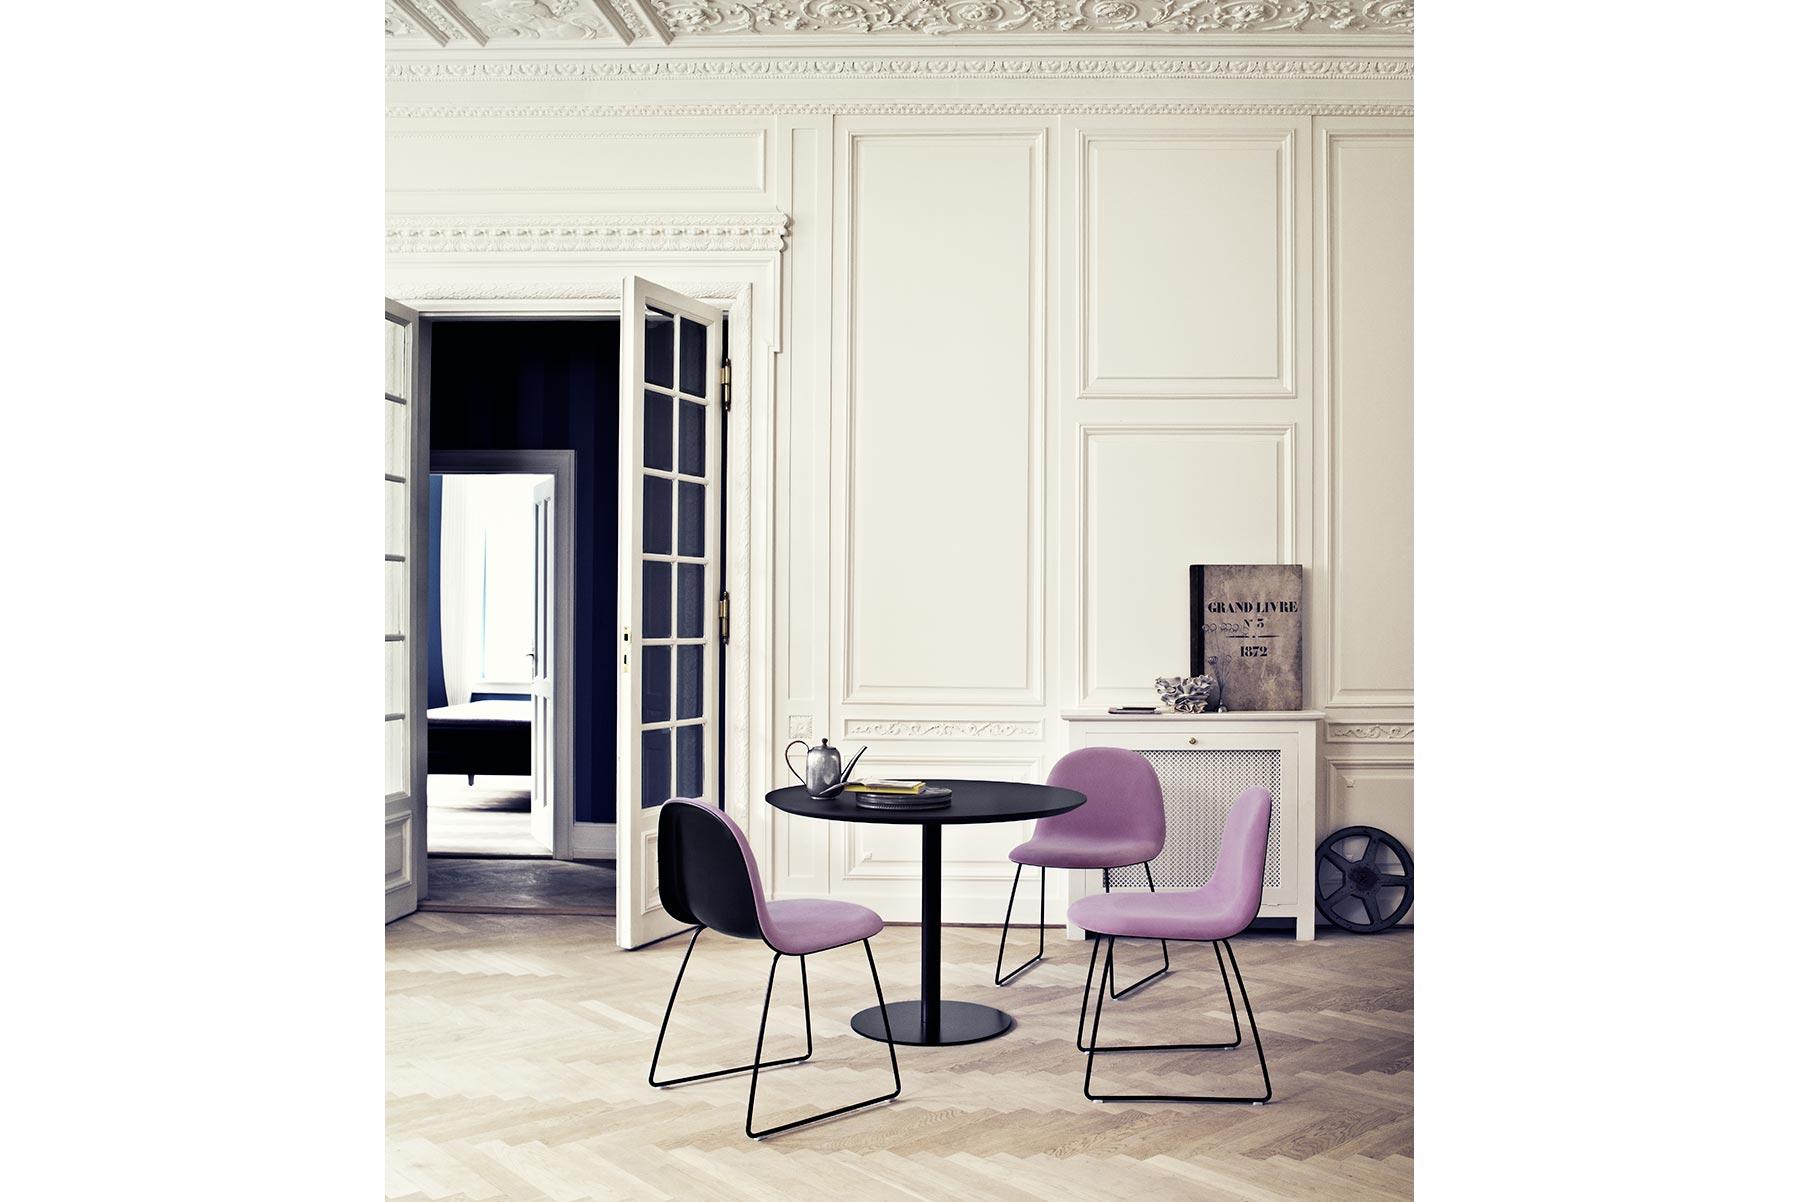 Der von der Kreativpartnerschaft Komplot Design entworfene Gubi-Stuhl ist das erste Möbeldesign, das auf der innovativen Technik der dreidimensionalen Verformung von Furnier basiert. Das 3D-Design verleiht dem Stuhl einen bequemen Sitz und ein